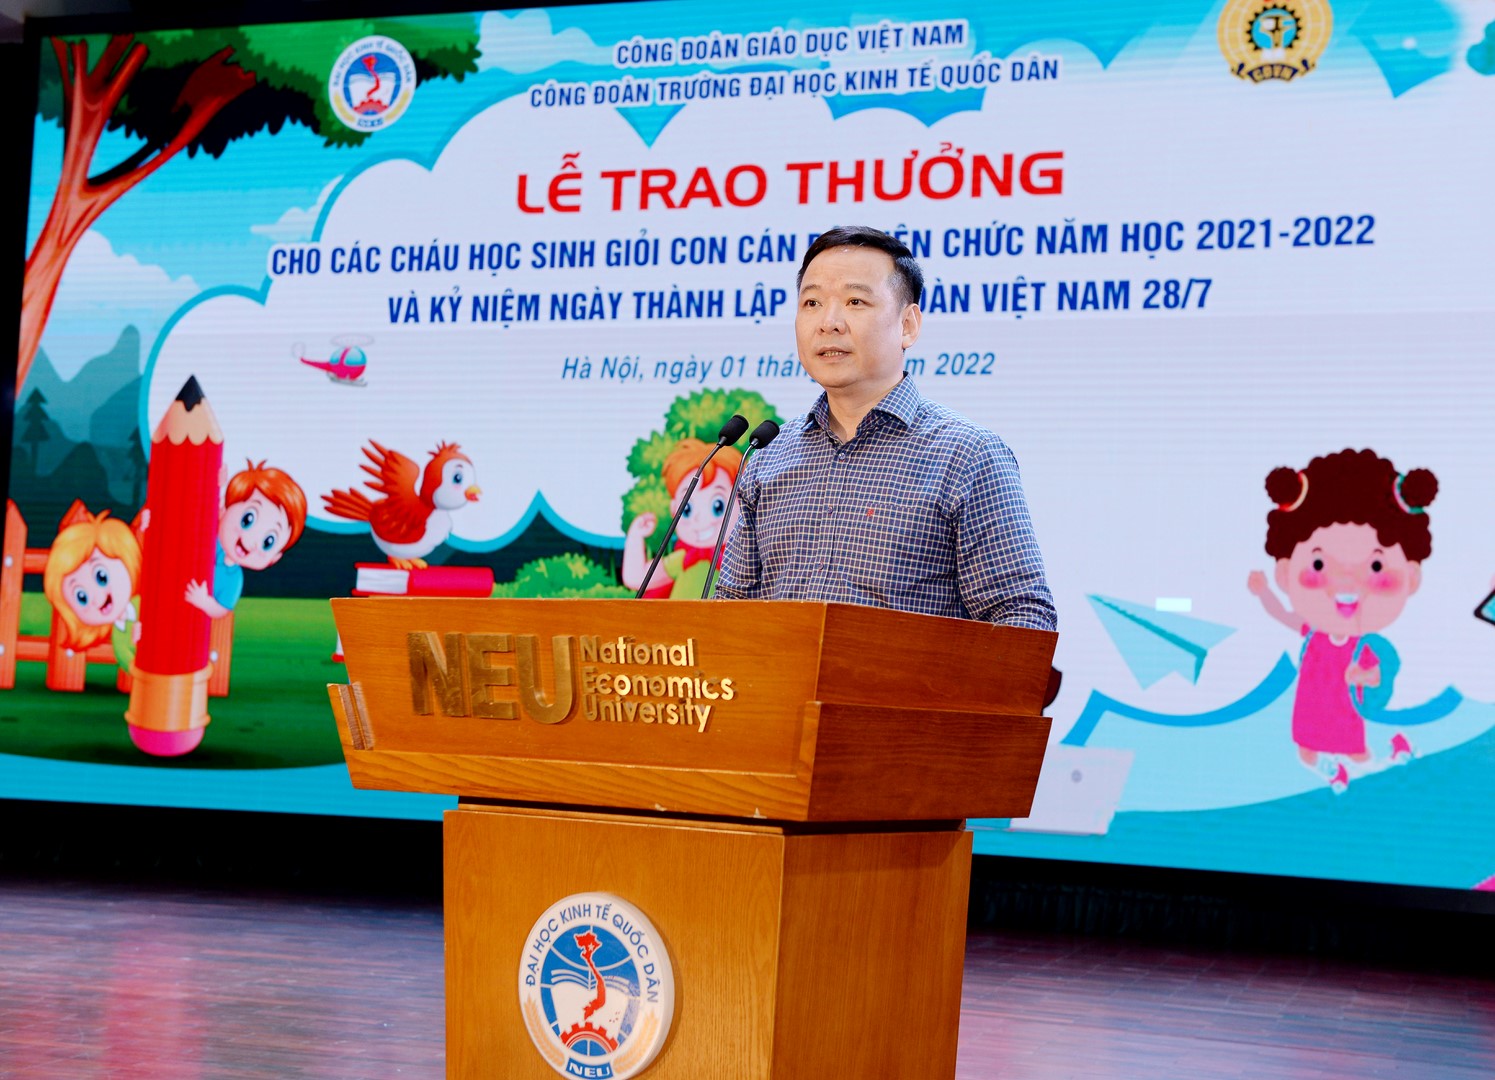 Lễ trao thưởng cho các cháu học sinh giỏi con cán bộ, viên chức năm học 2021-2022 và kỷ niệm Ngày thành lập công đoàn Việt Nam 28/7 1